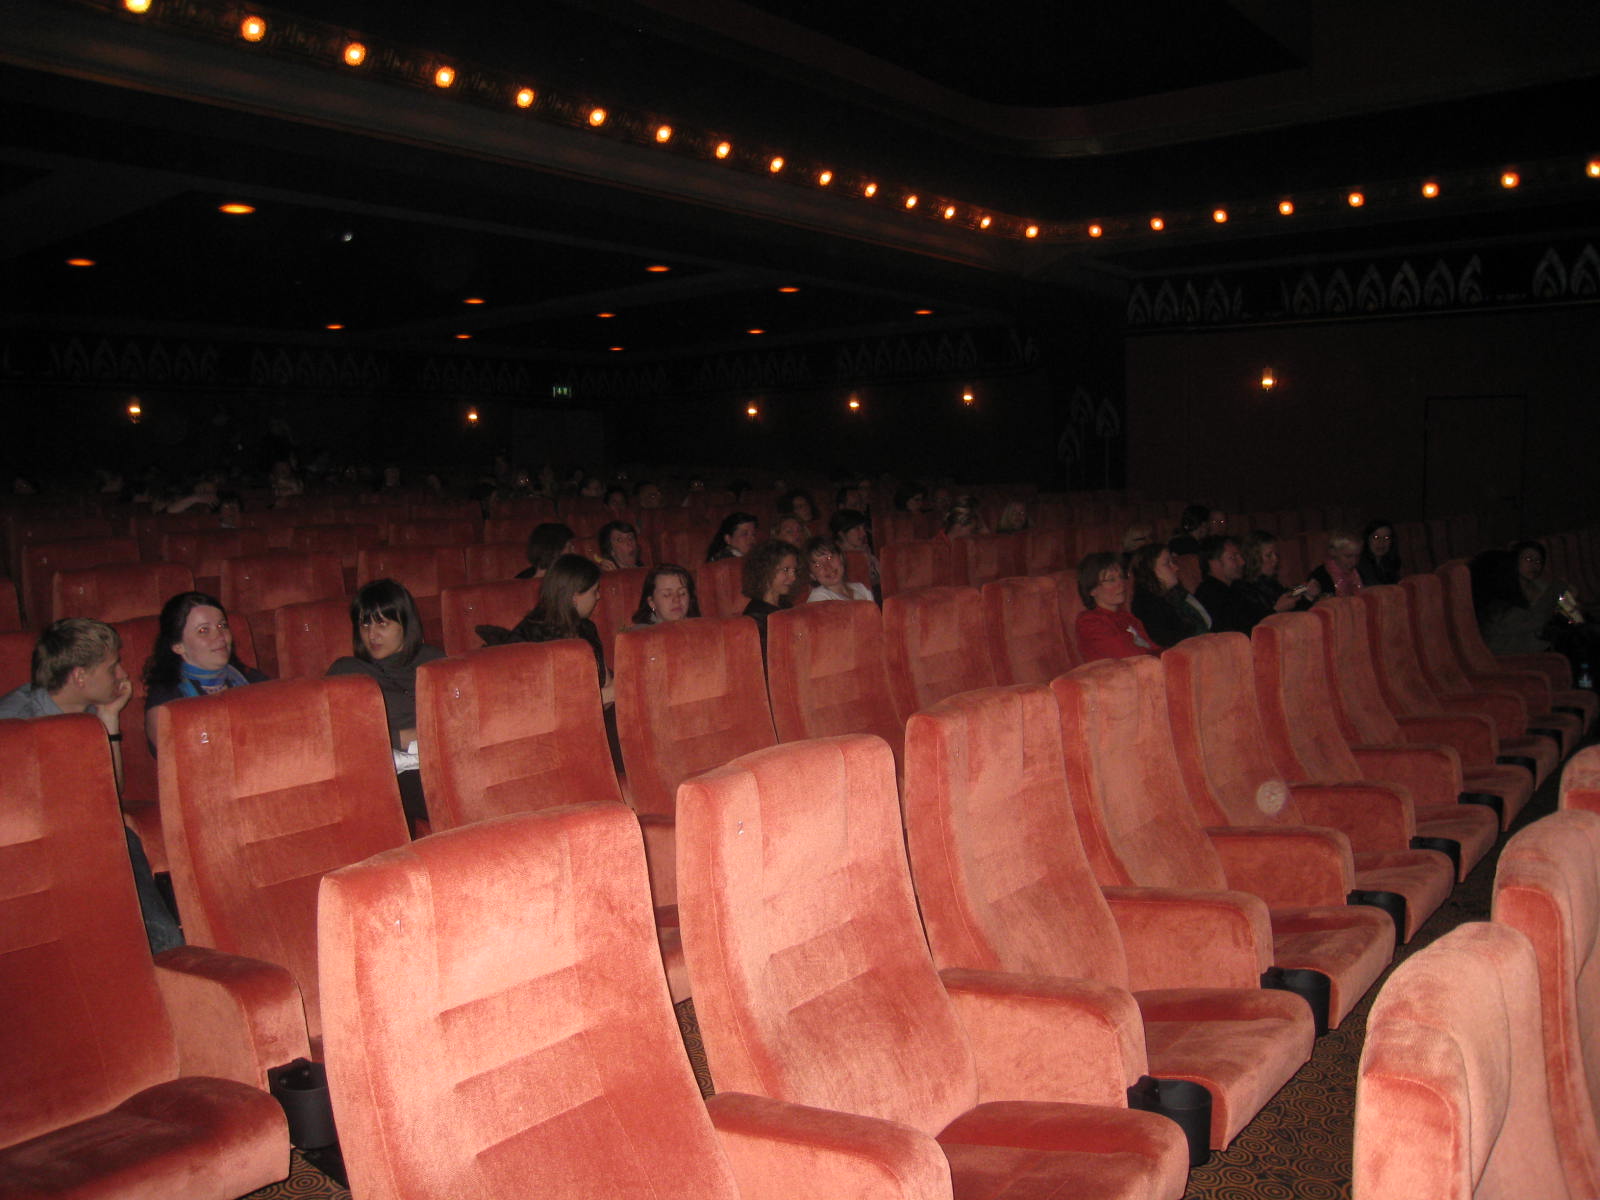 Kinosaal 1 dagegen verfügt über breite und wunderbar gepolsterte Kinositze mit schwingenden Rückenlehnen (Foto: Conceicao Feist)